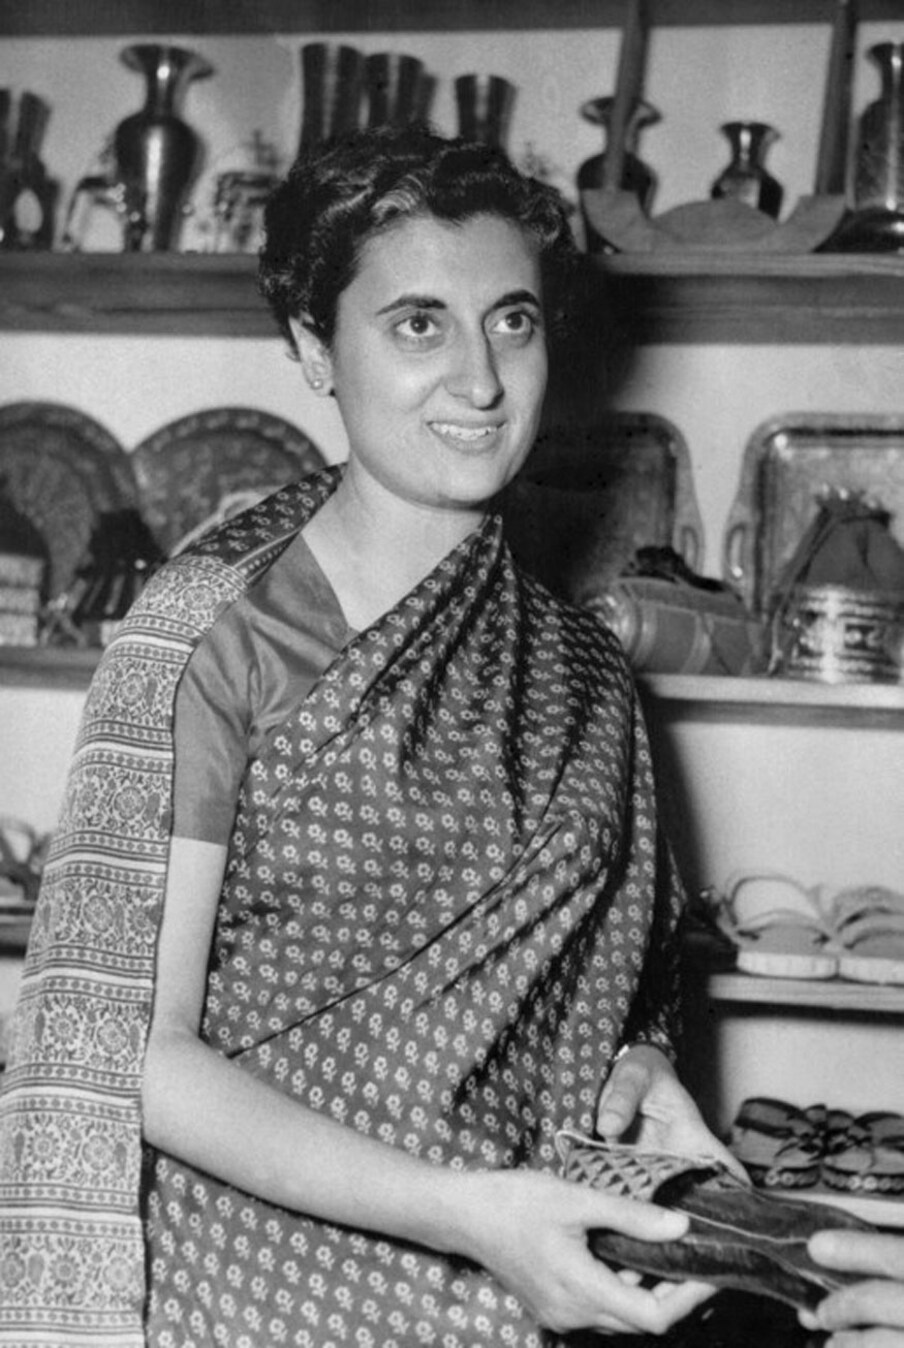  इंदिरा गांधी की 35वीं पुण्यतिथि के मौके पर देखिए उनकी कुछ अनसीन और रेयर फोटोज. इंदिरा गांधी की यह फाइल फोटो उनकी स्विट्ज़रलैंड यात्रा के दौरान उस वक्त ली गई थी जब वे ज़्यूरिख में एक इंडियन स्टोर पर पहुंची थीं. (AFP/news18.com)